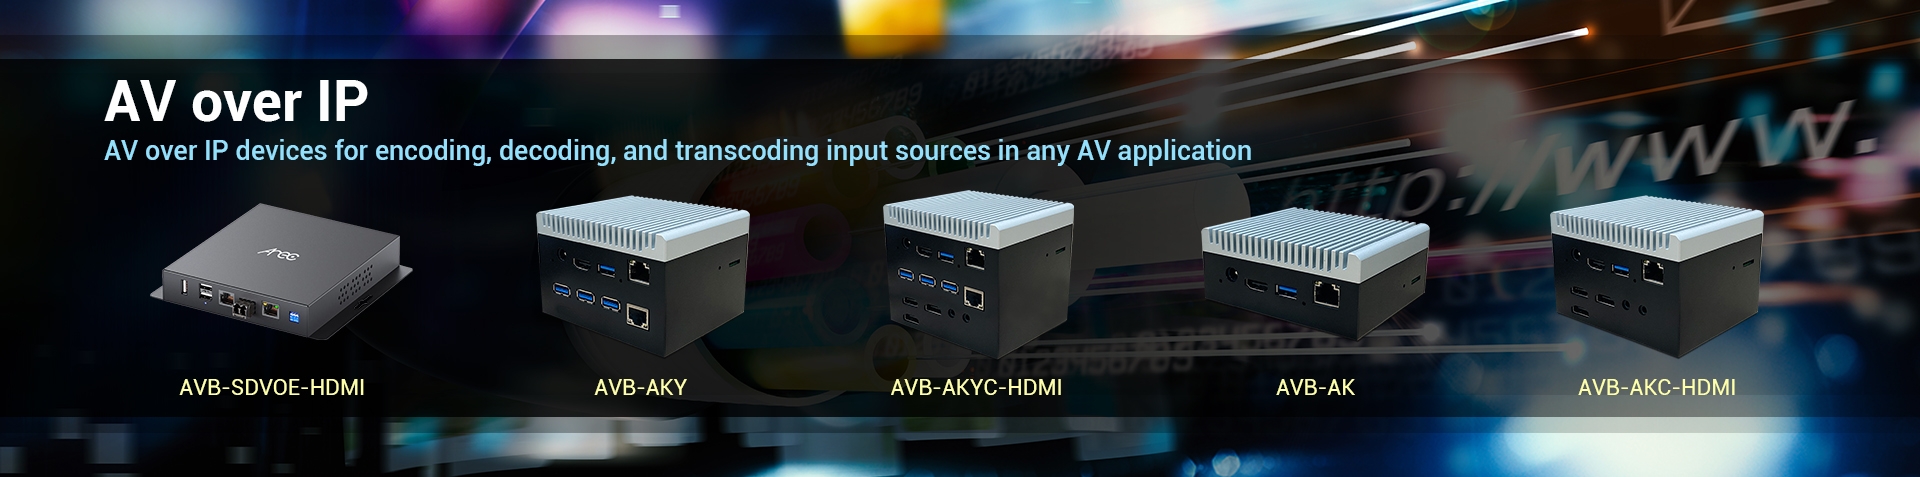 EverFocus launches an AV over IP Solution for any AV applications